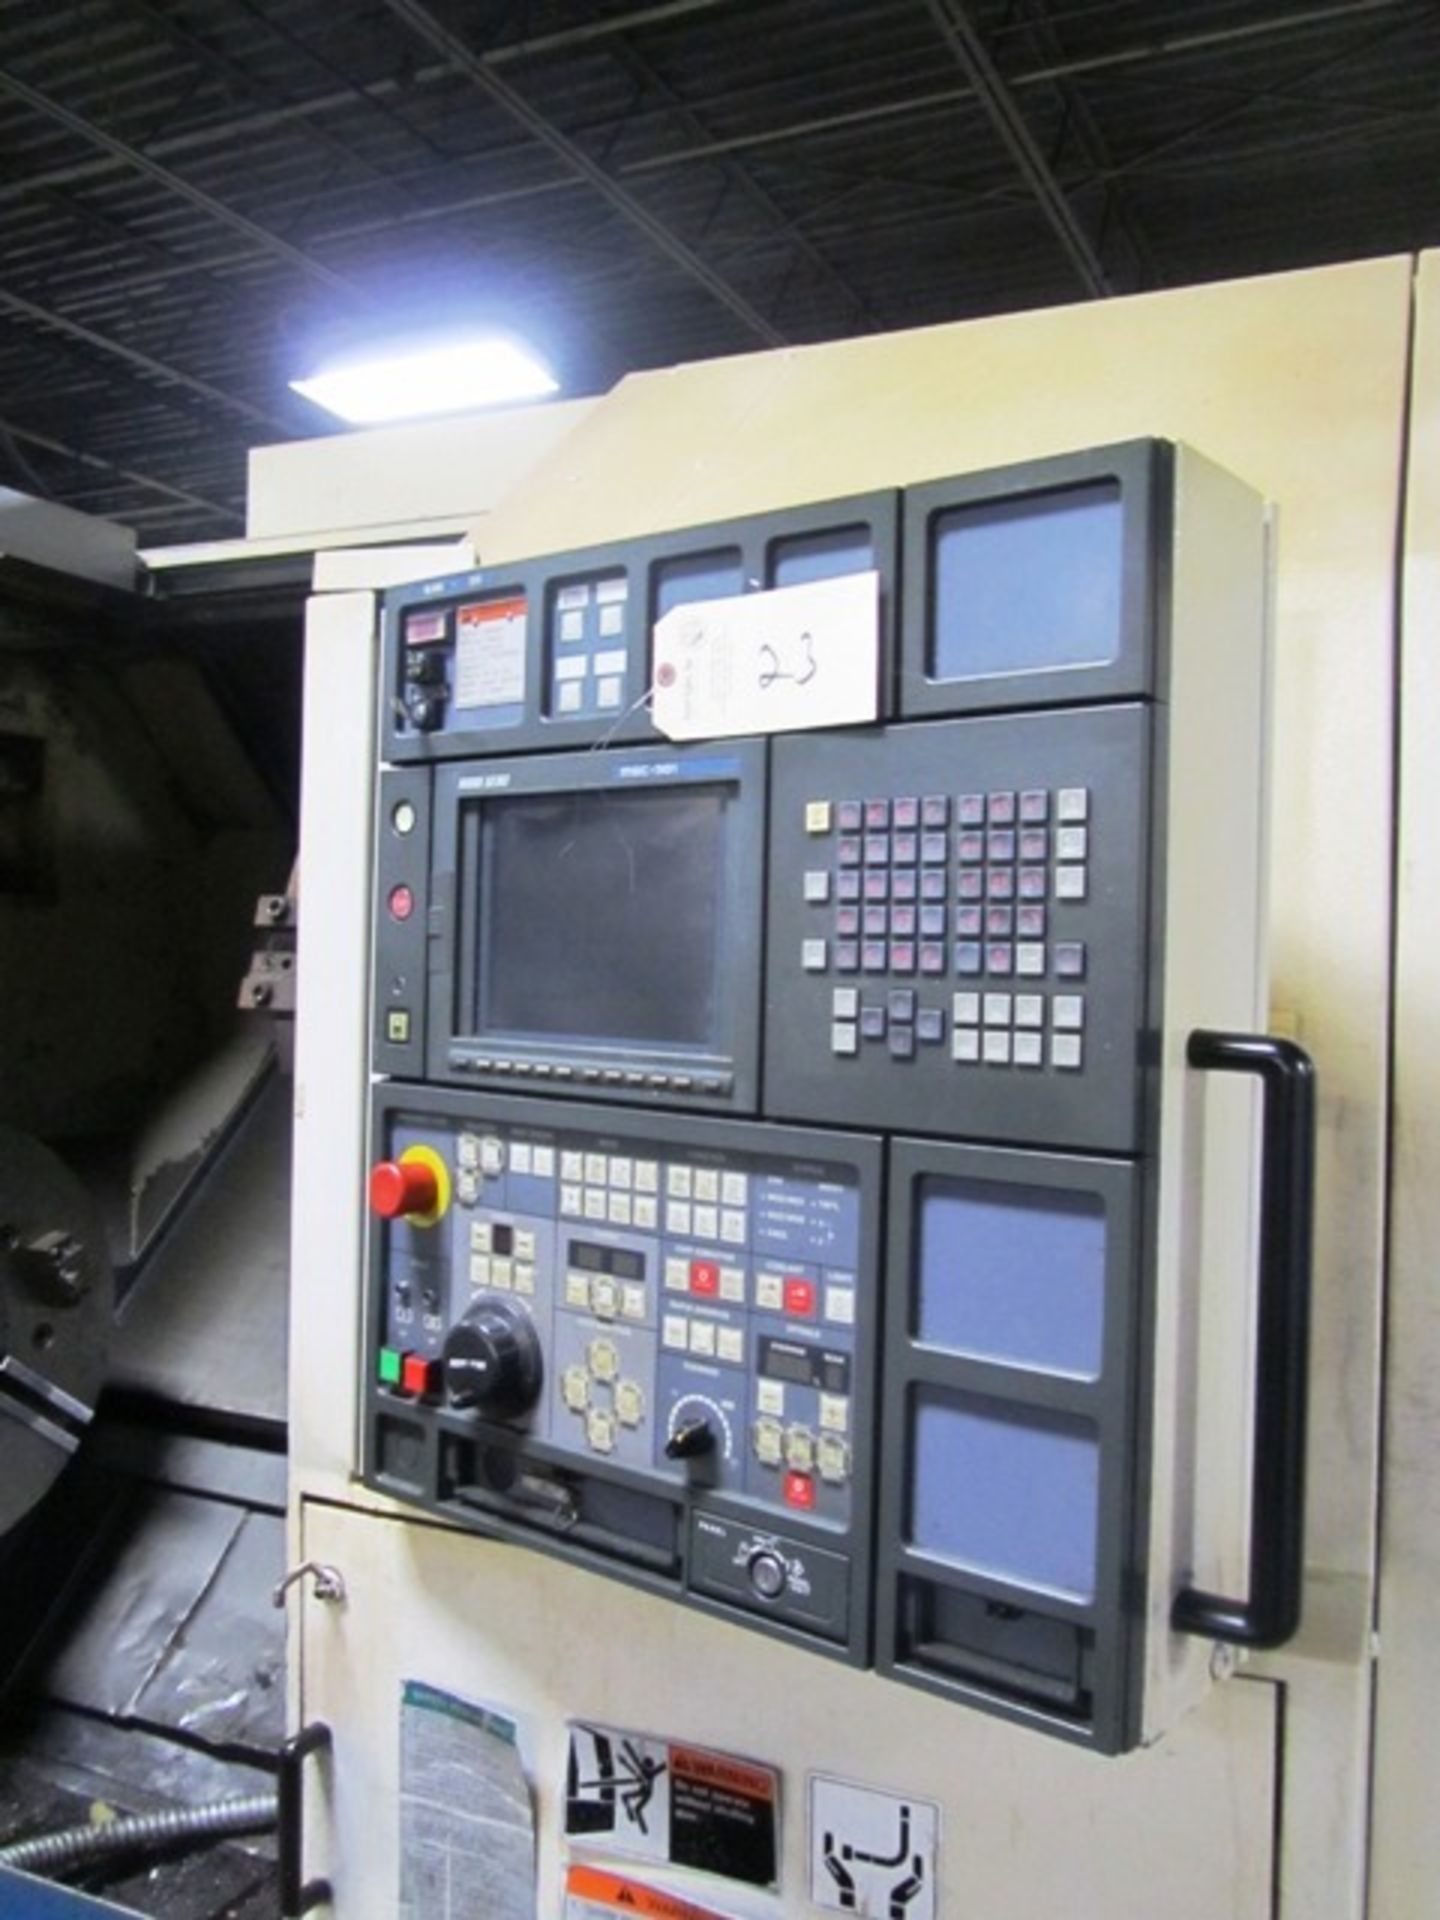 Mori Seiki SL400 CNC Turning Center - Image 2 of 4